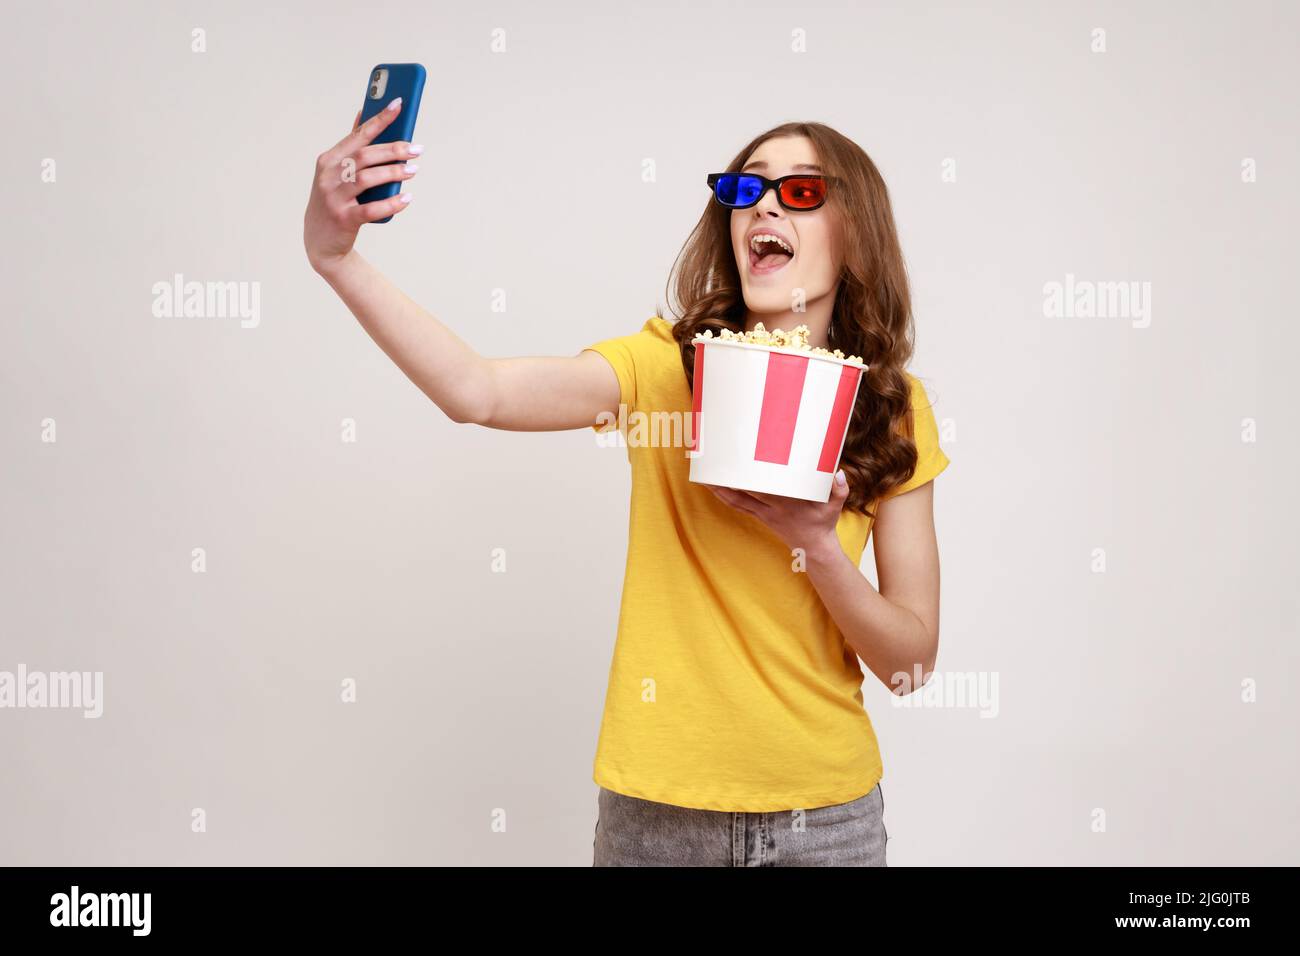 Jeune drôle heureux heureux excité adolescente fille portant un T-shirt jaune style décontracté tenant le seau à pop-corn à emporter, faisant selfie ou la diffusion en direct. Prise de vue en studio isolée sur fond gris. Banque D'Images